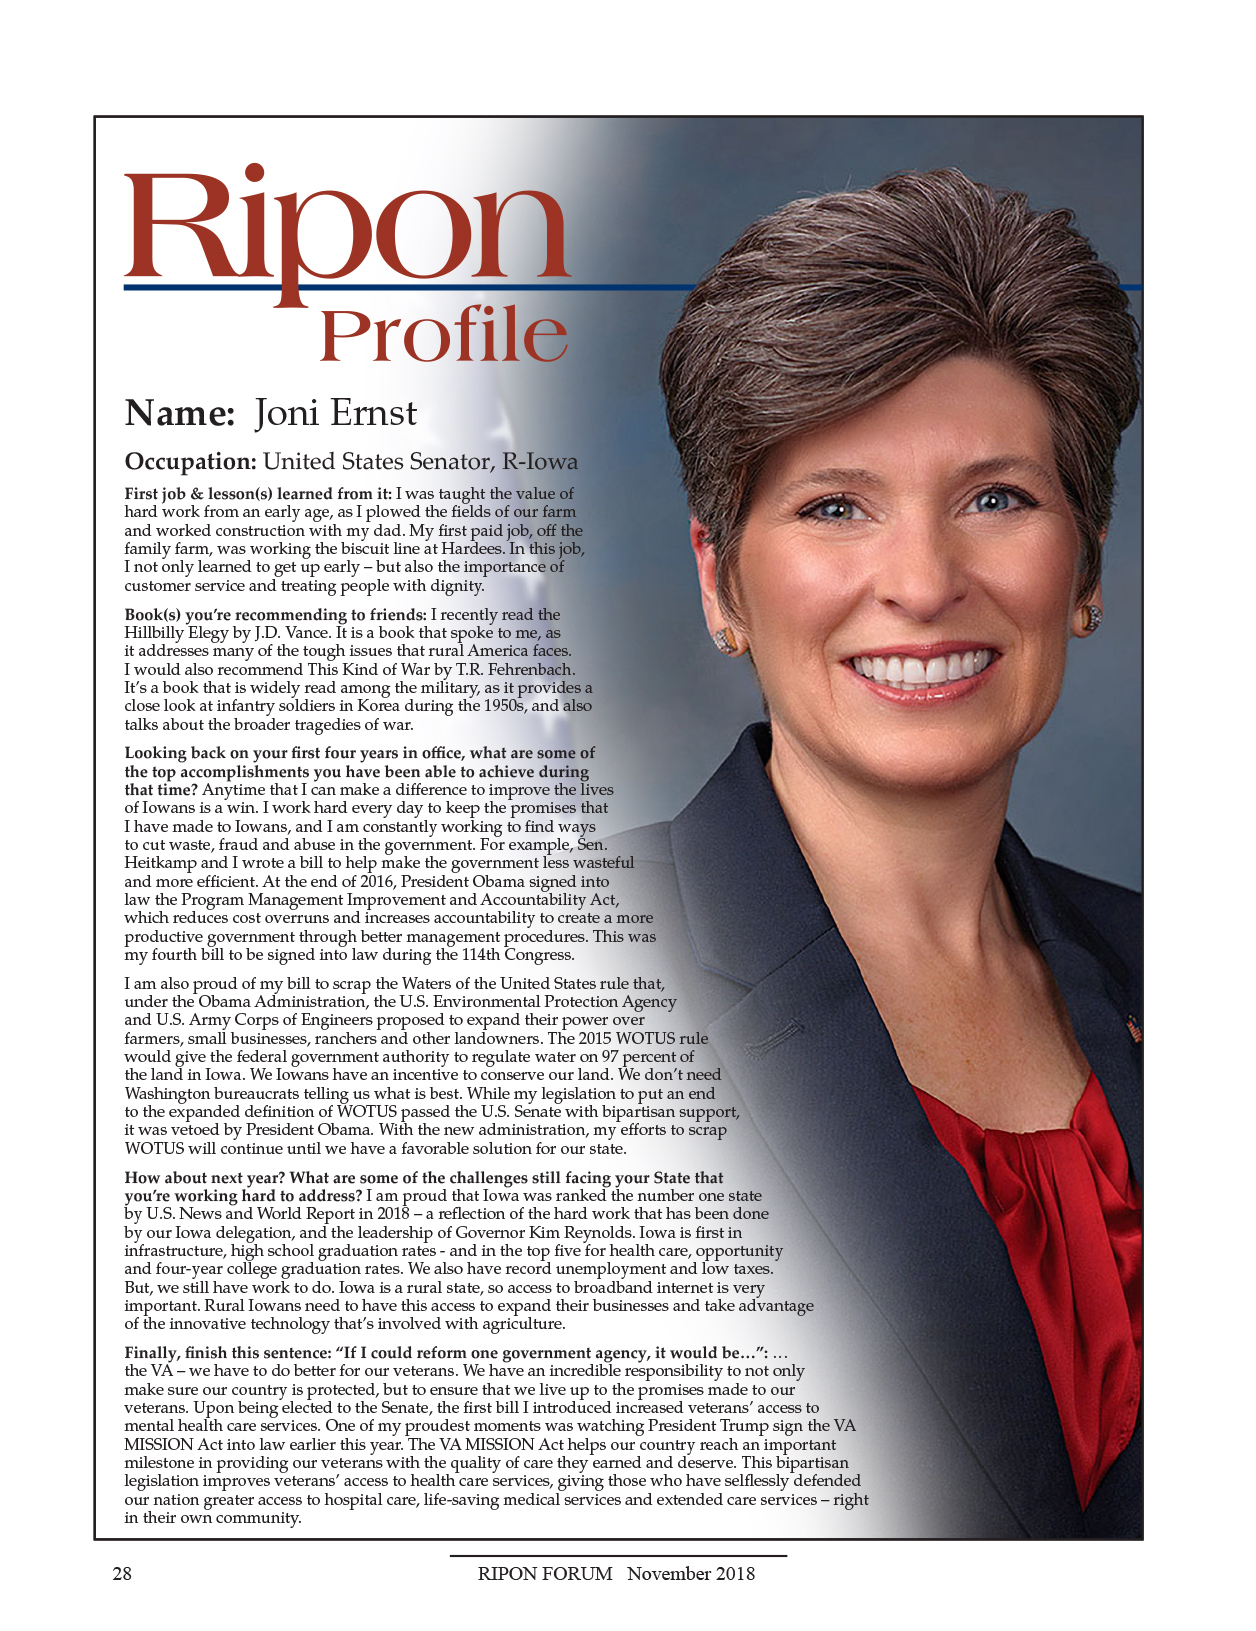 Ripon Profile of Joni Ernst